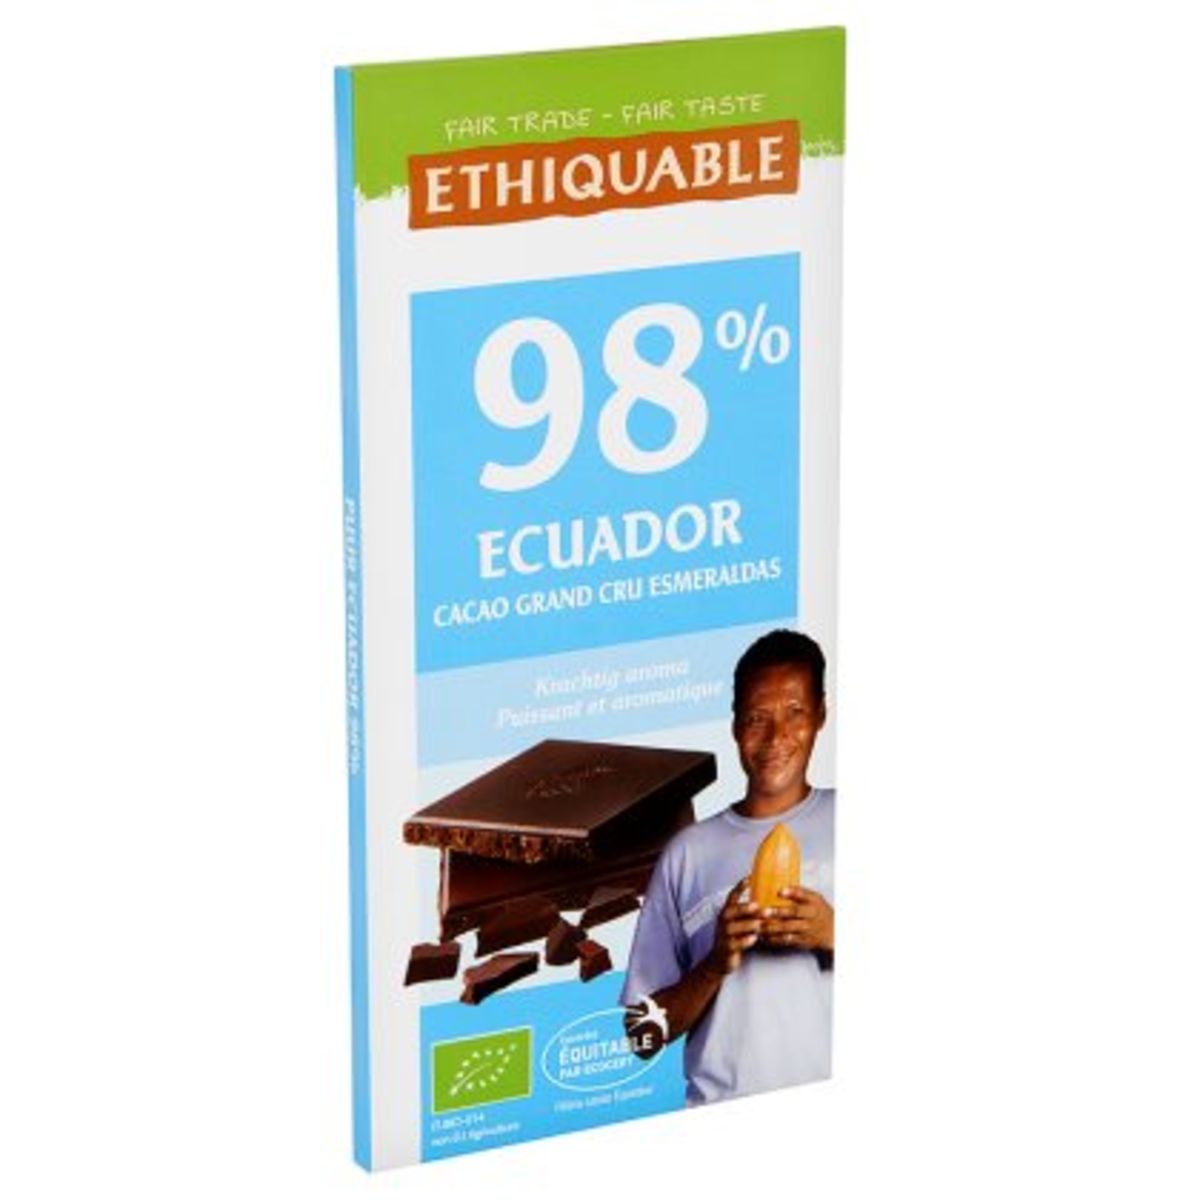 Ethiquable Bio 98% Ecuador Puissant et Aromatique 100 g